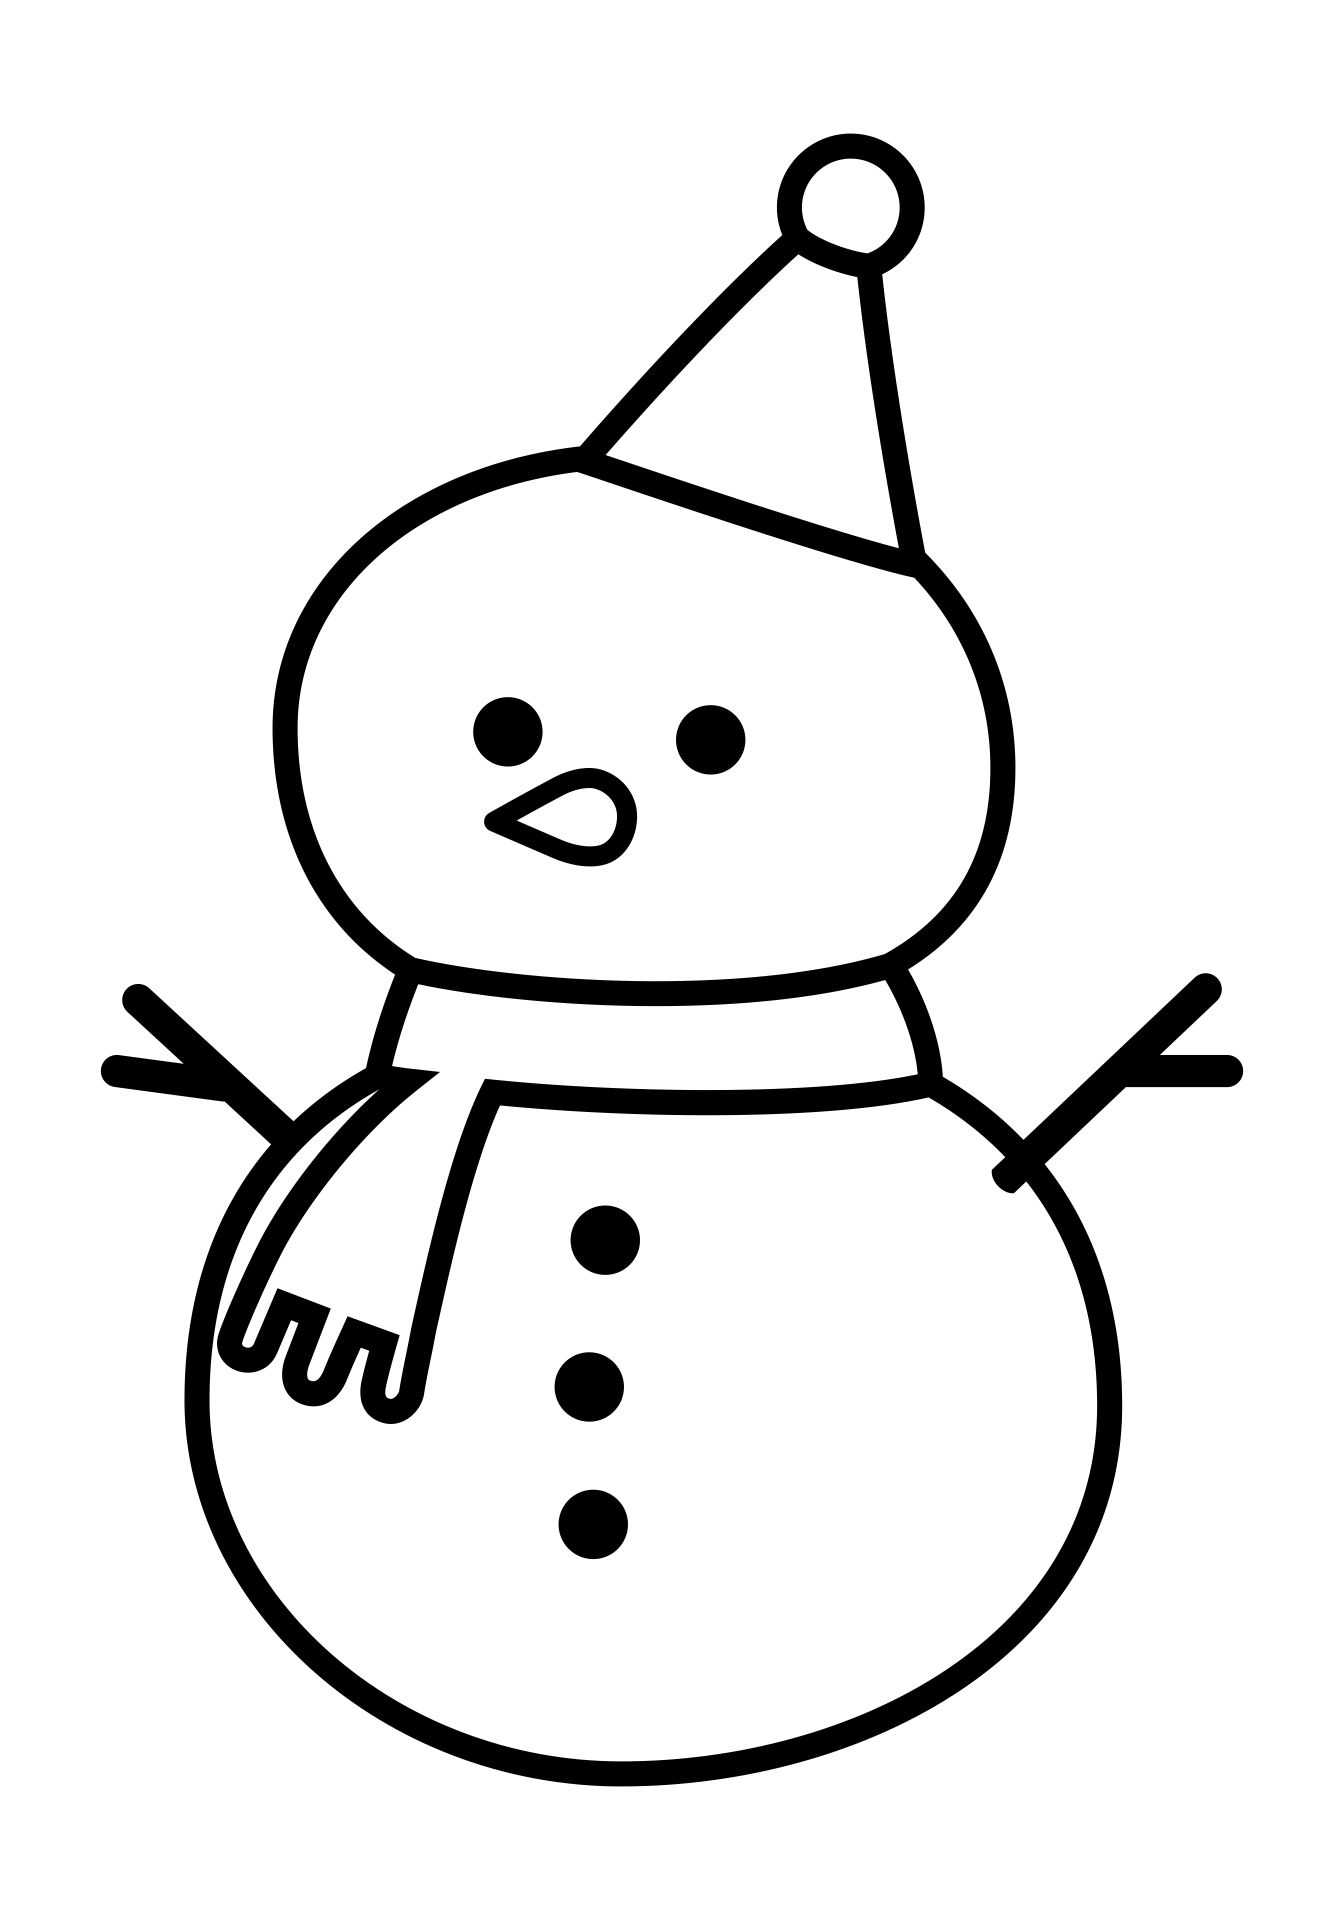 Printable Christmas Snowman Template